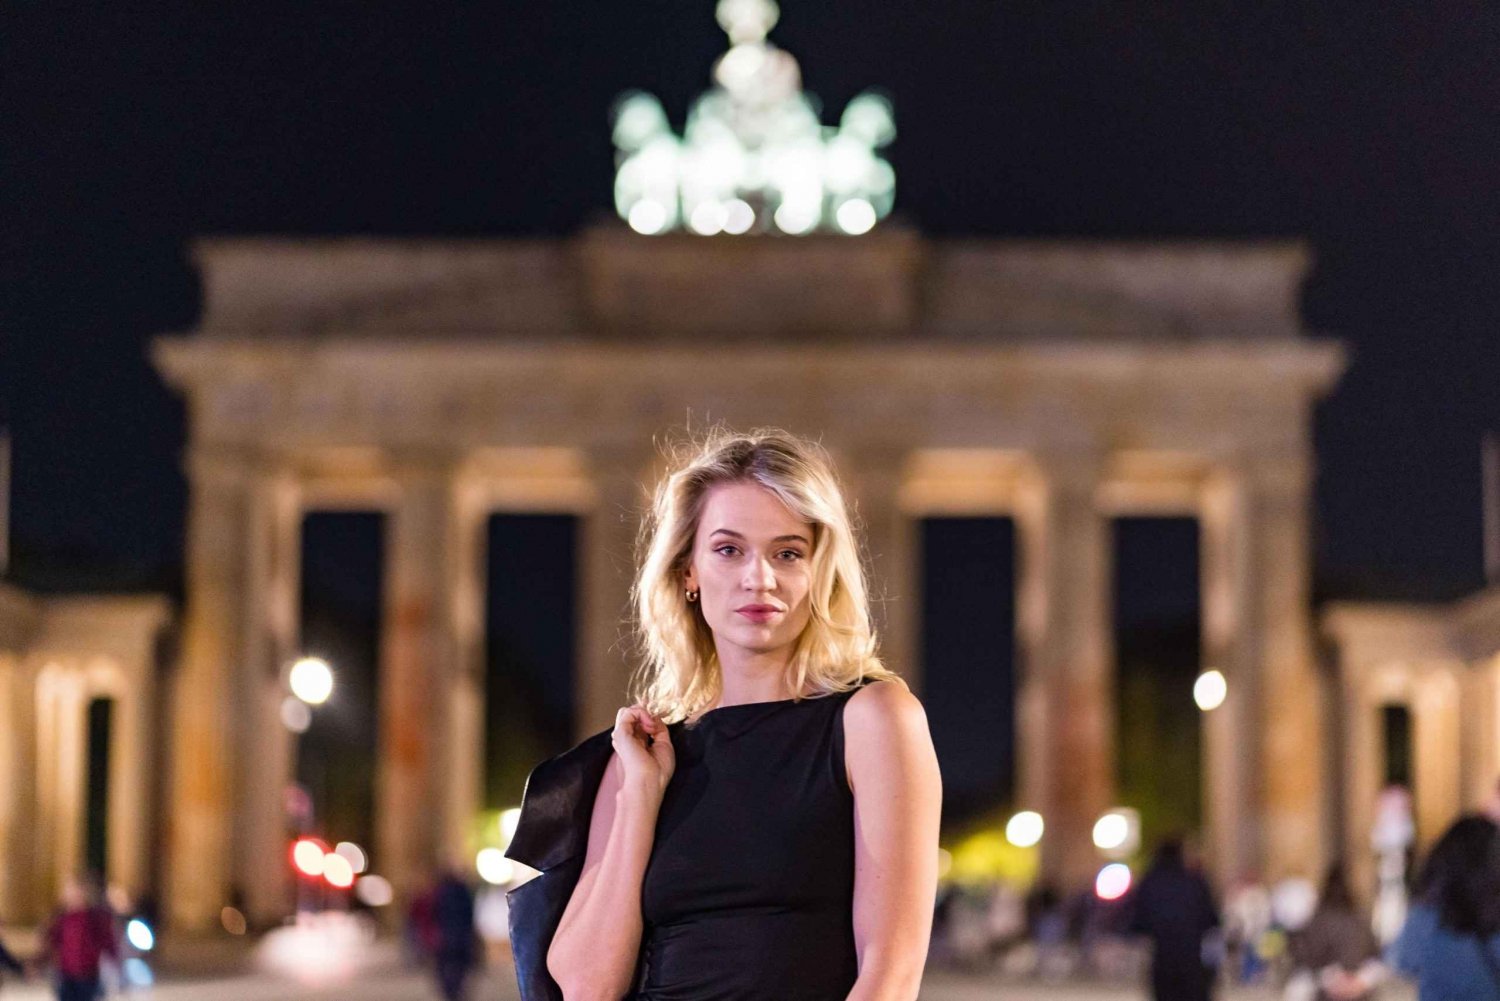 Berlino di notte: Servizio fotografico privato presso Illuminated Cityscape